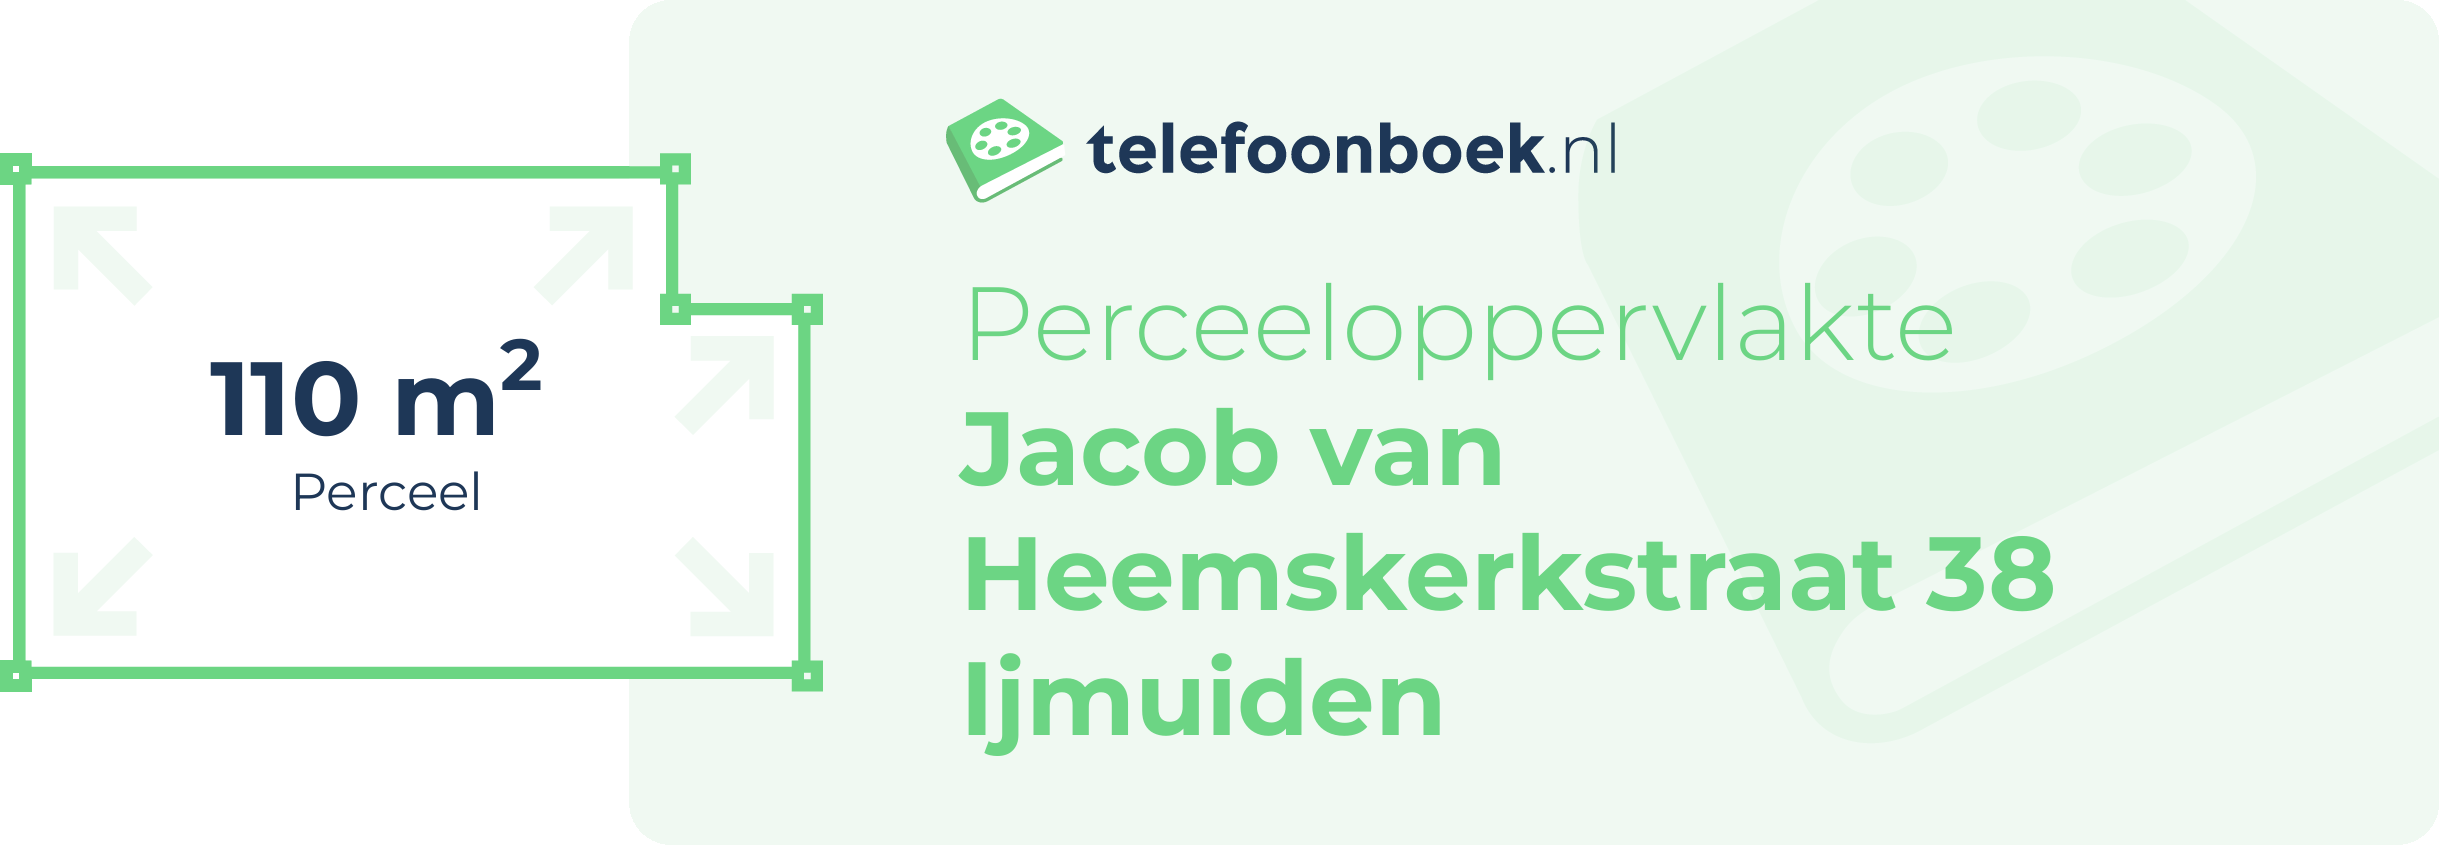 Perceeloppervlakte Jacob Van Heemskerkstraat 38 Ijmuiden